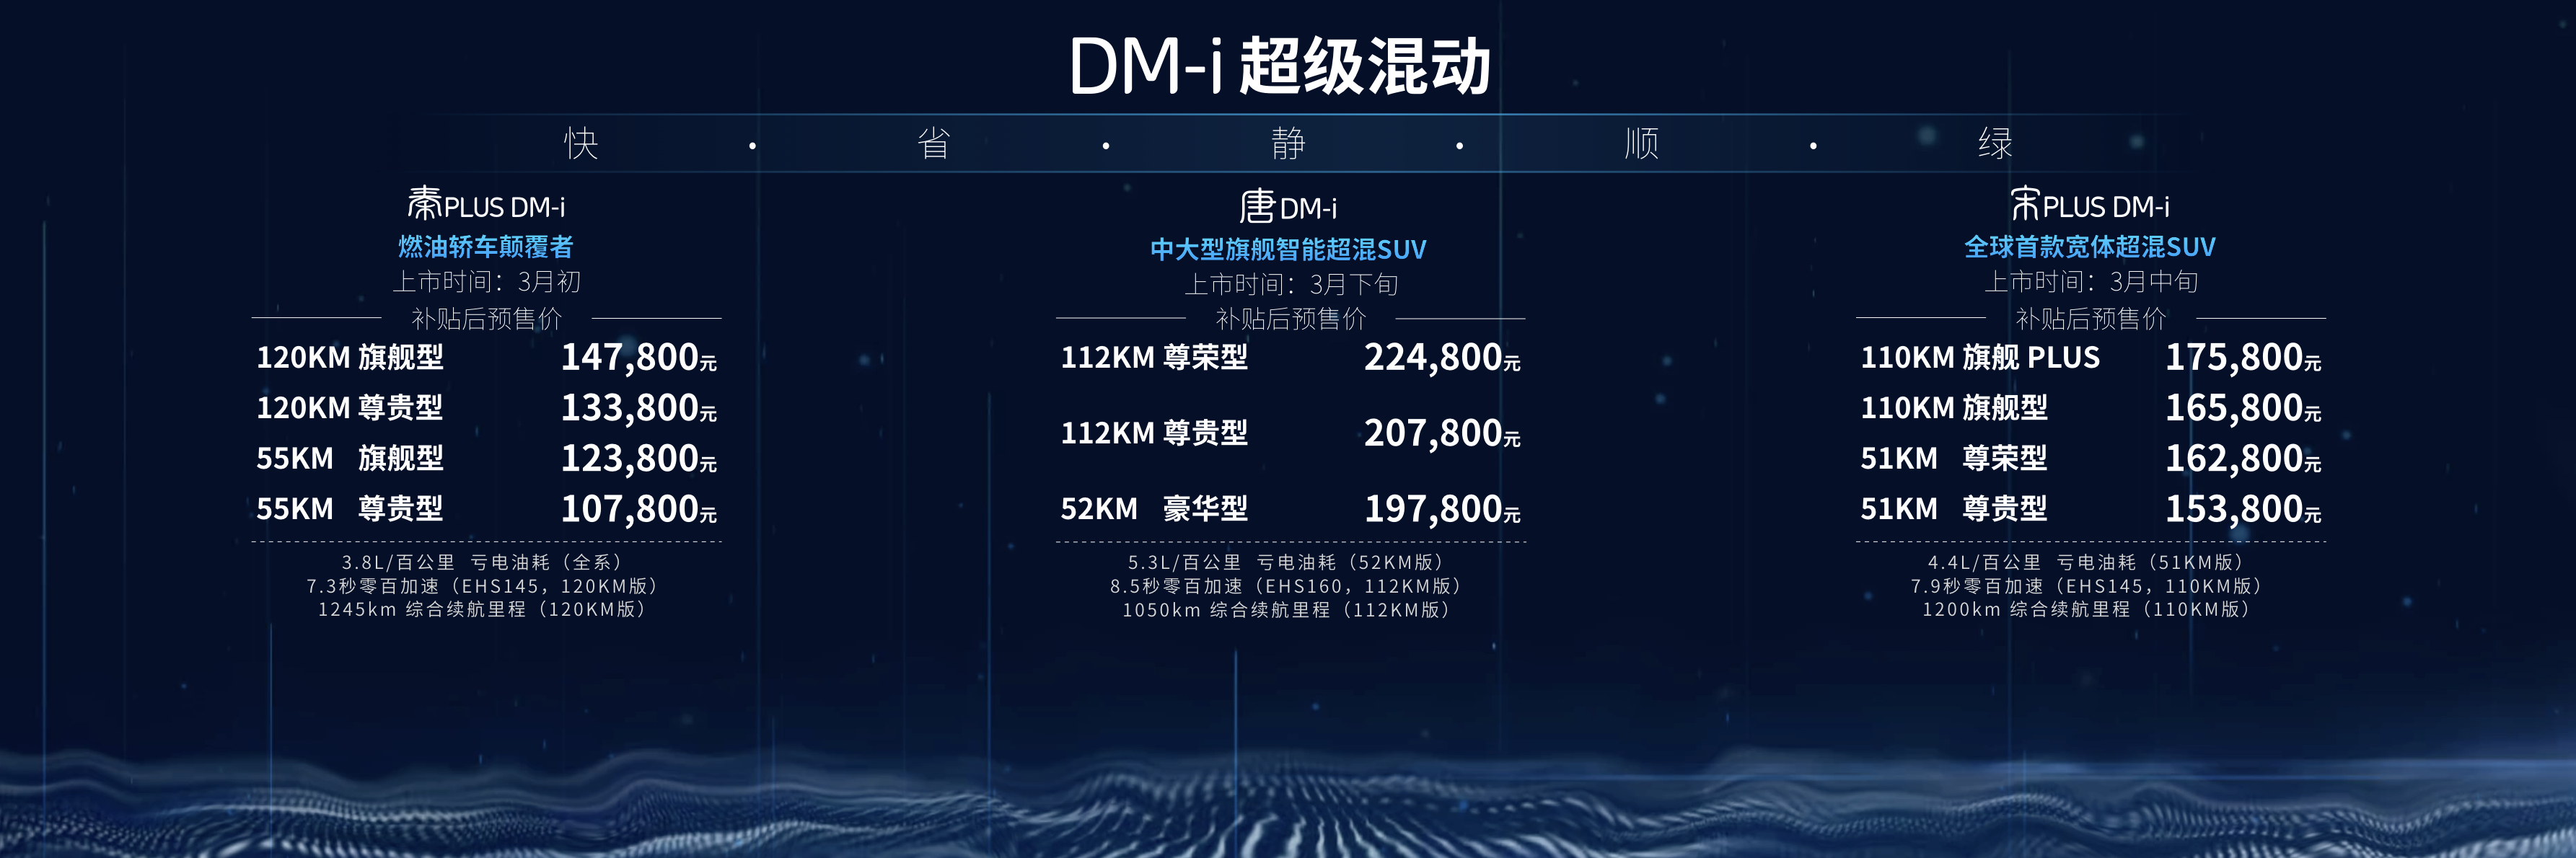 比亚迪DM-i超级混动正式发布 三款DM-i超级混动车型同步预售